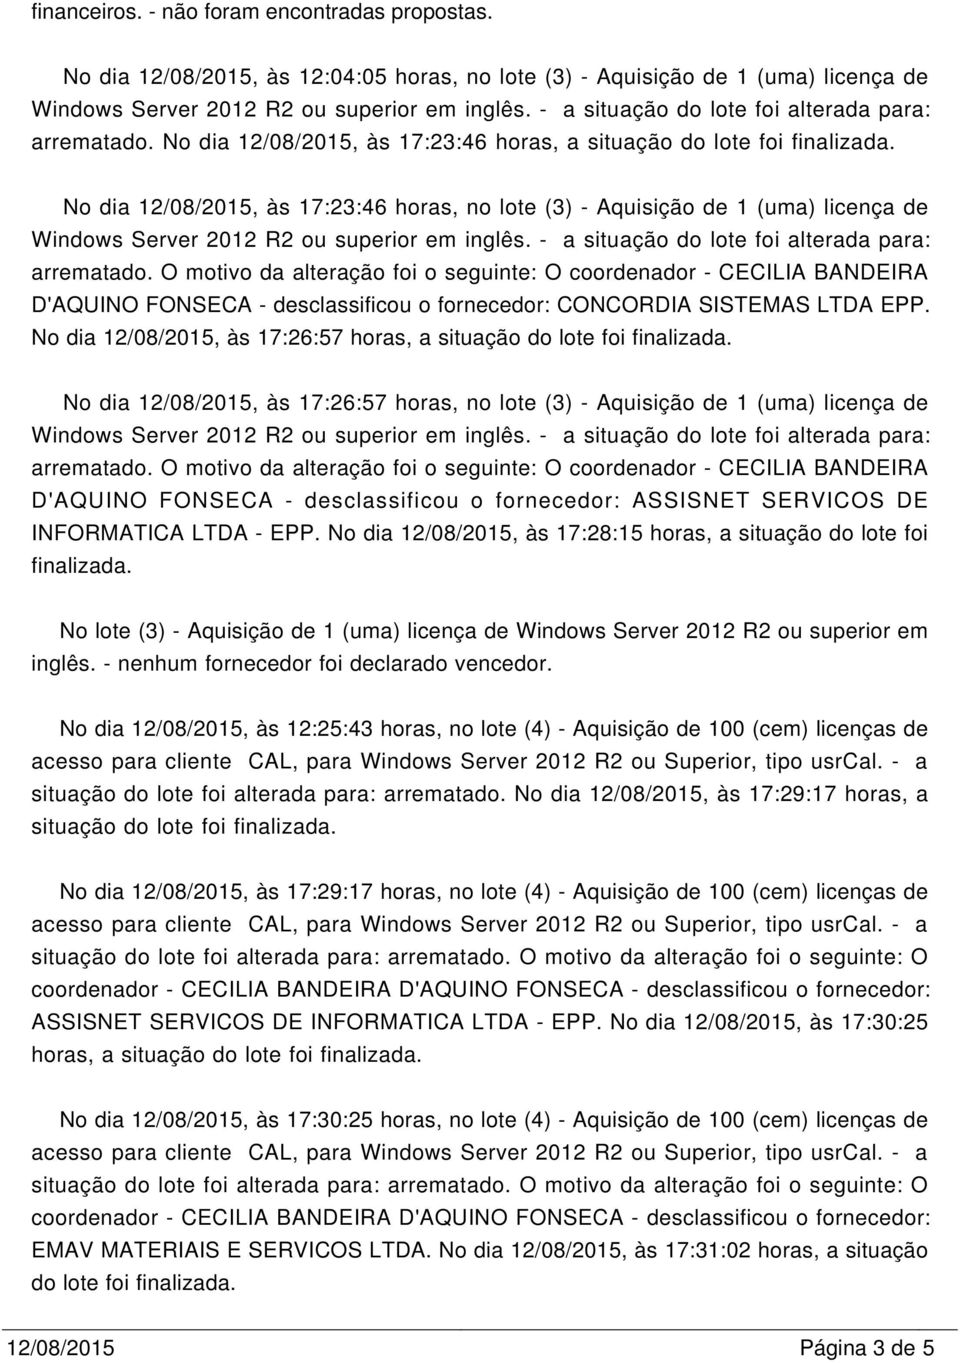 O motivo da alteração foi o seguinte: O coordenador - CECILIA BANDEIRA D'AQUINO FONSECA - desclassificou o fornecedor: CONCORDIA SISTEMAS LTDA EPP.